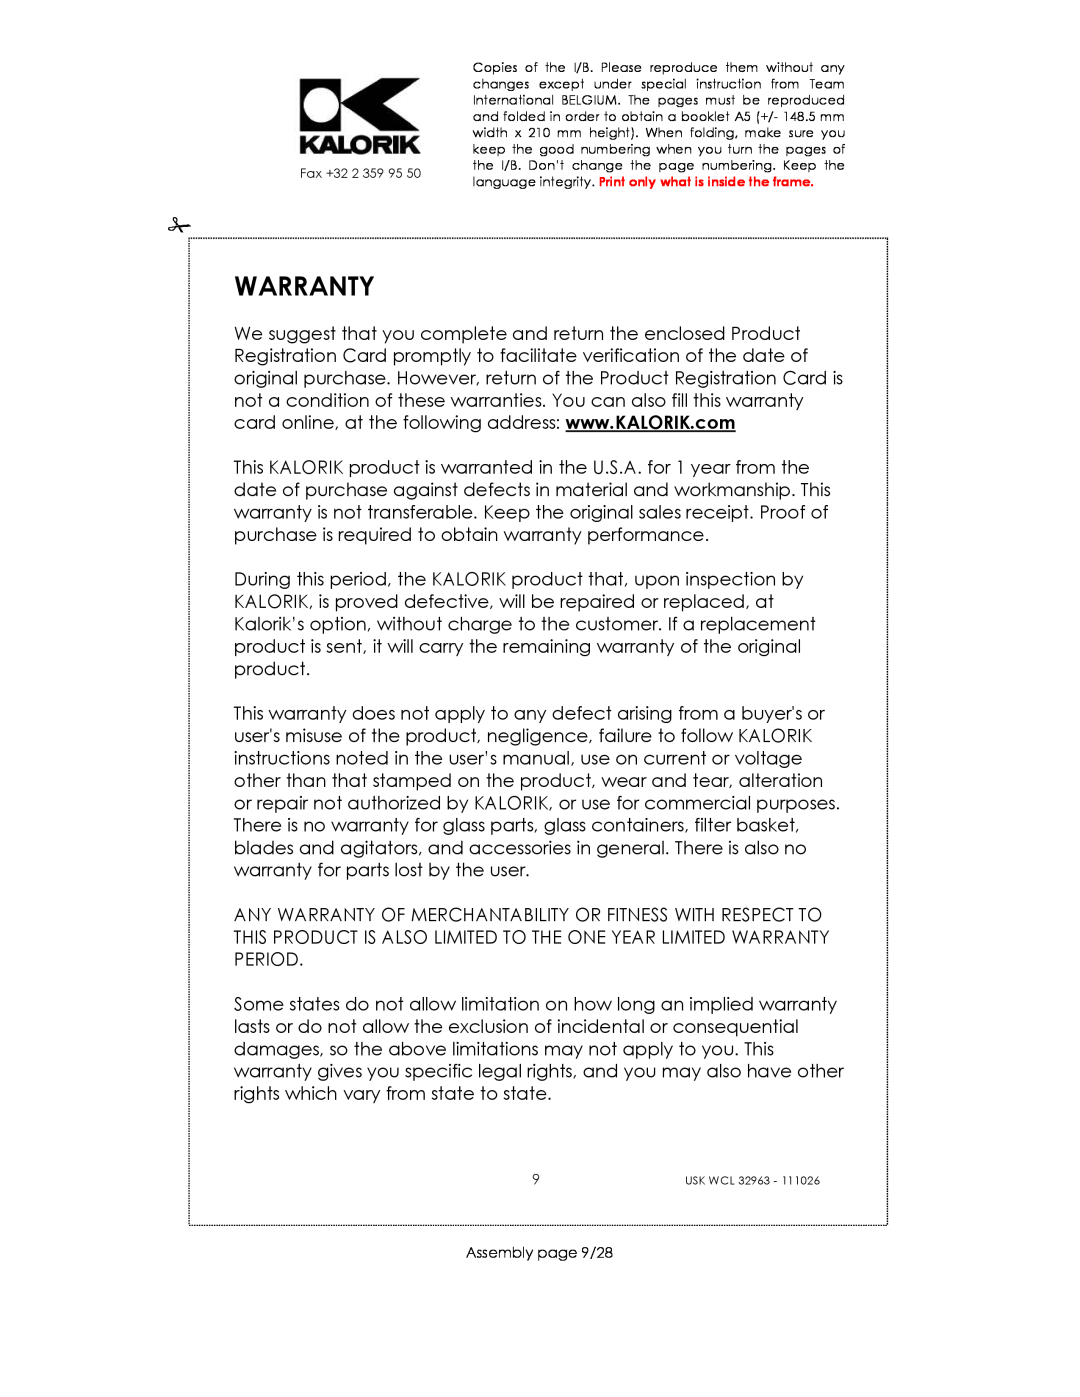 Kalorik USK WCL 32963 manual Warranty, Assembly page 9/28 